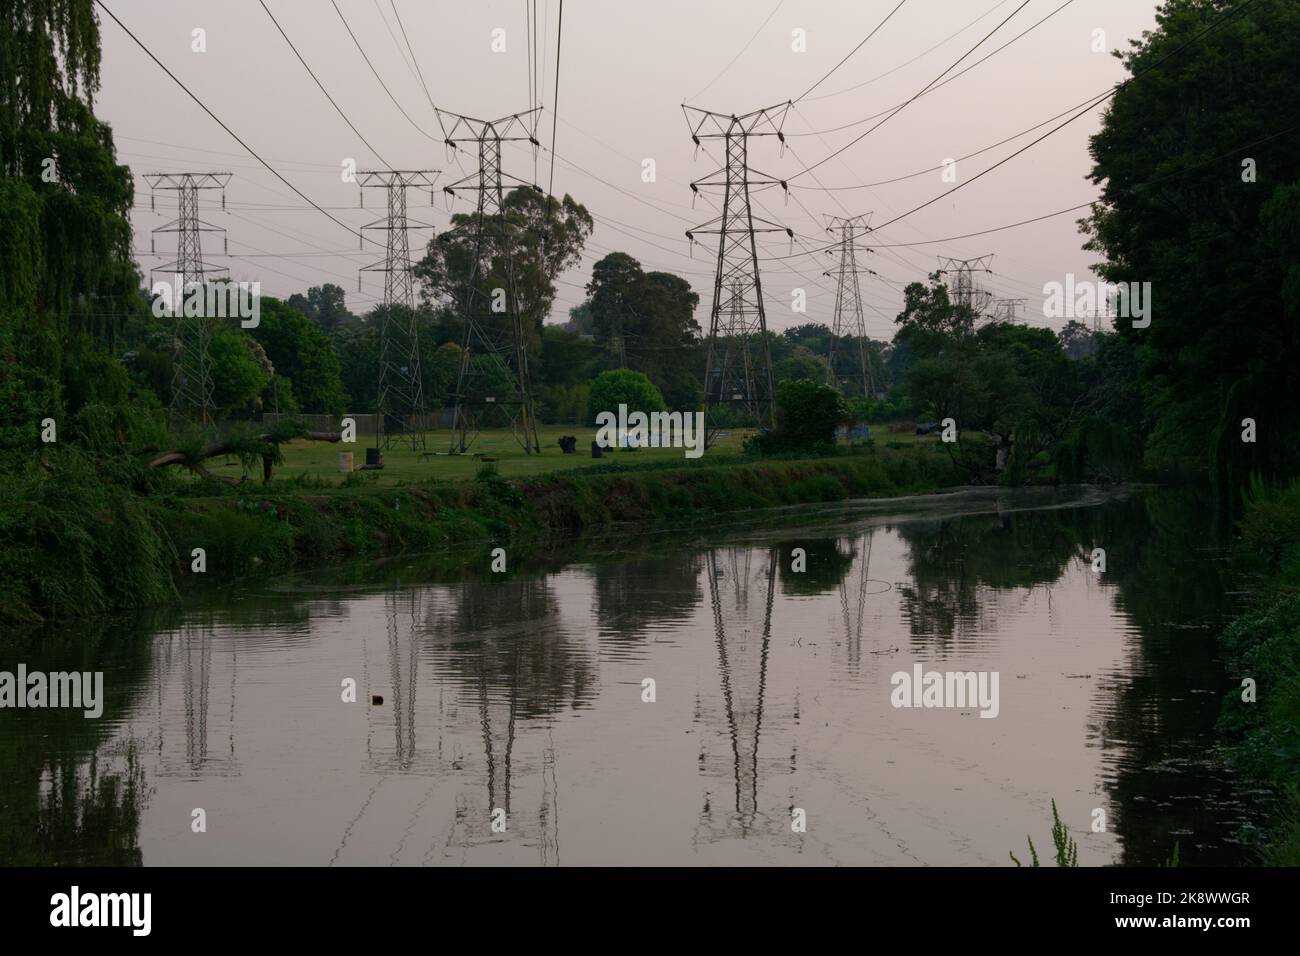 Die elektrischen Oberleitungen wurden auf Pylonen getragen, die einen ruhigen und friedlichen Fluss überquerten. Die Kabel sind über dem Kopf und spiegeln sich im Fluss wider. Sehr friedlich. Stockfoto